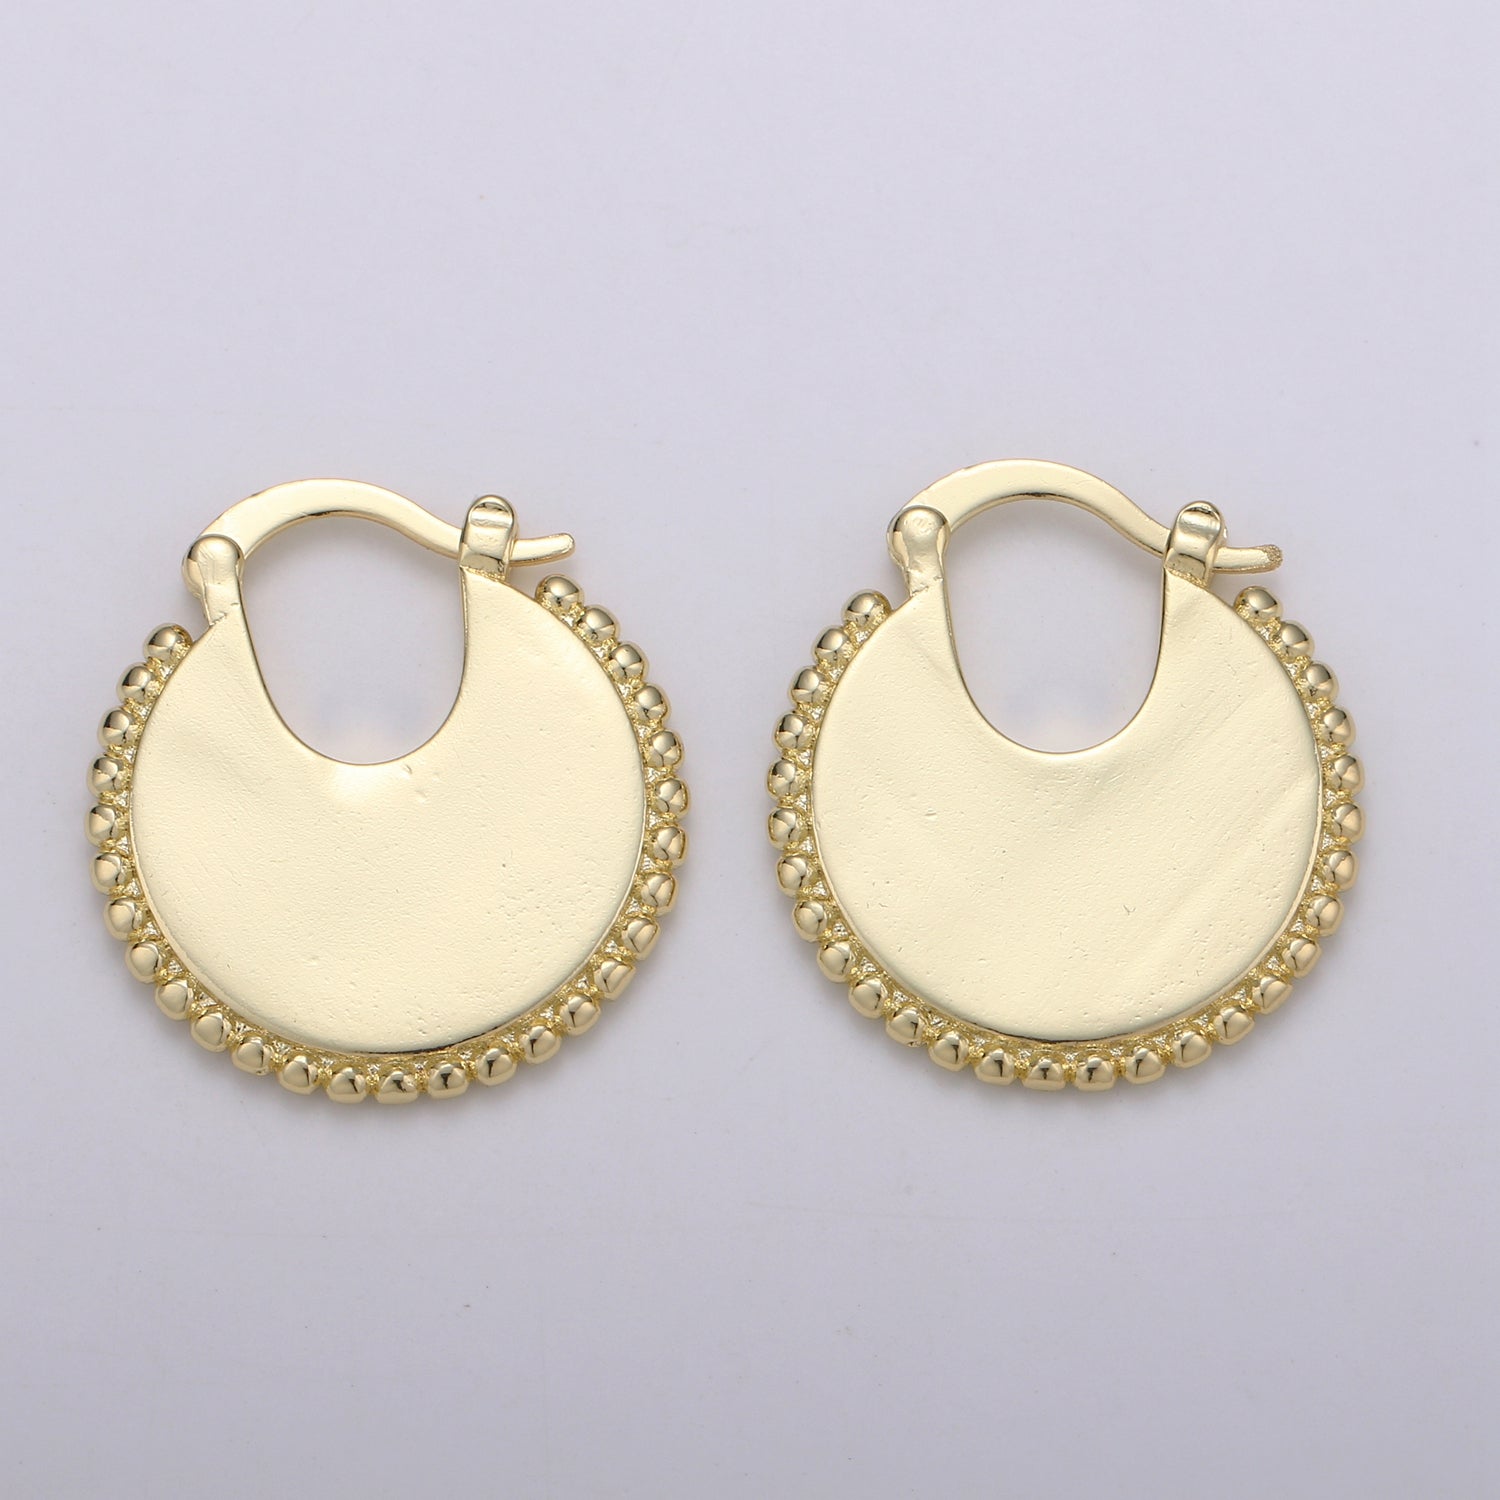 Big Statement Gold Earrings, Gold Fan Earrings, Large Gold Earrings, Women Big Earrings Bold Statement Jewelry Earr-1315 - DLUXCA